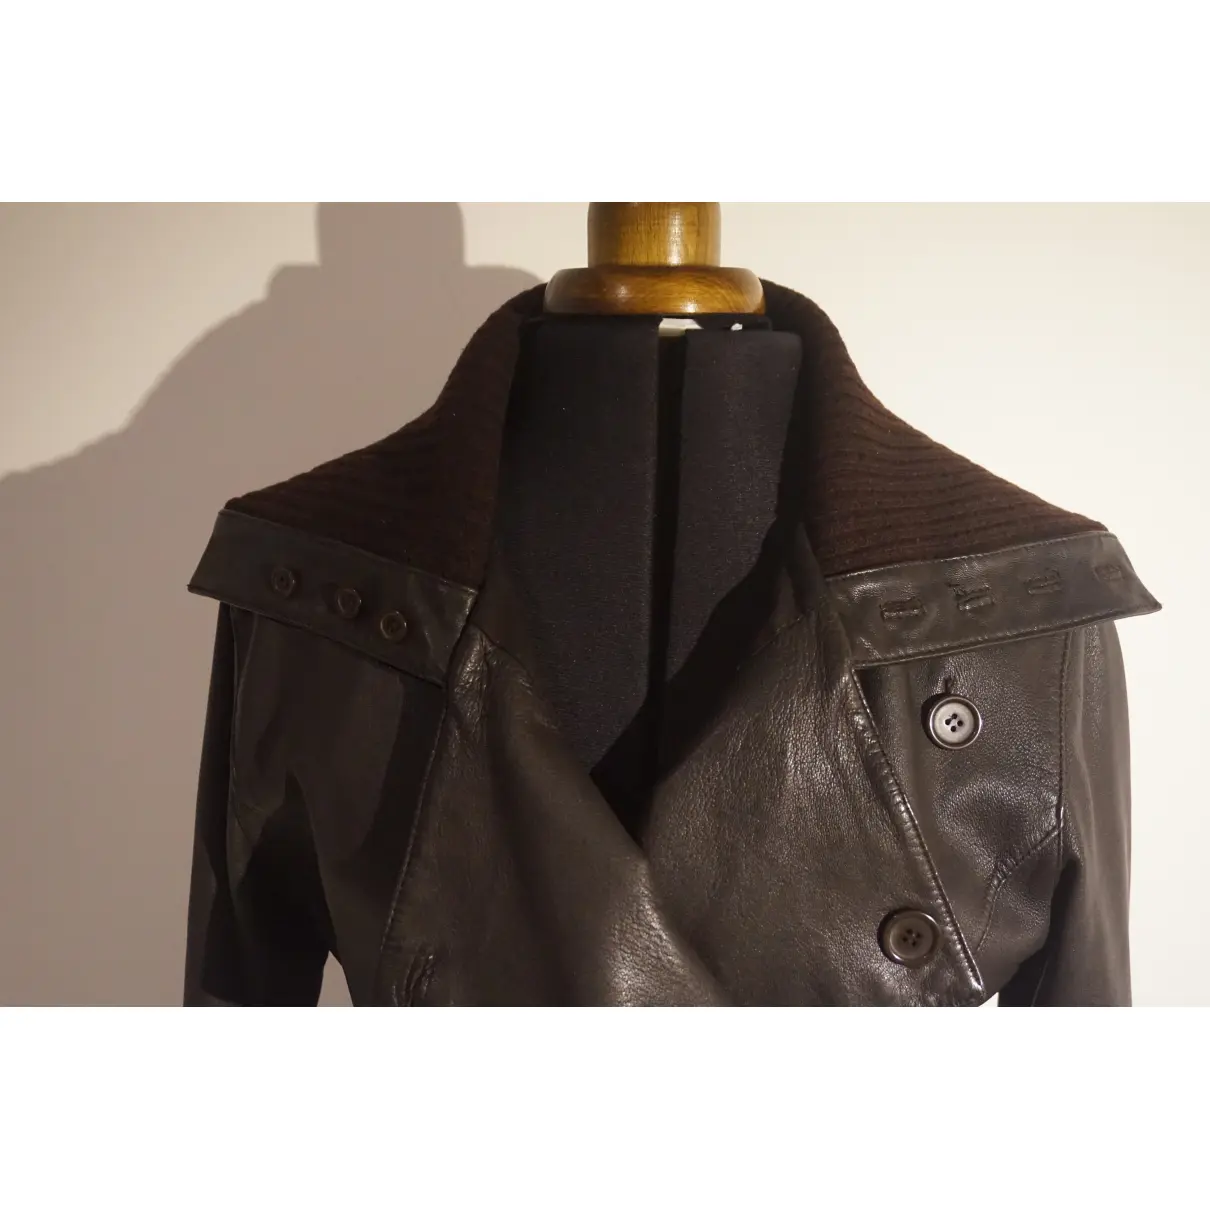 Leather jacket Essentiel Antwerp